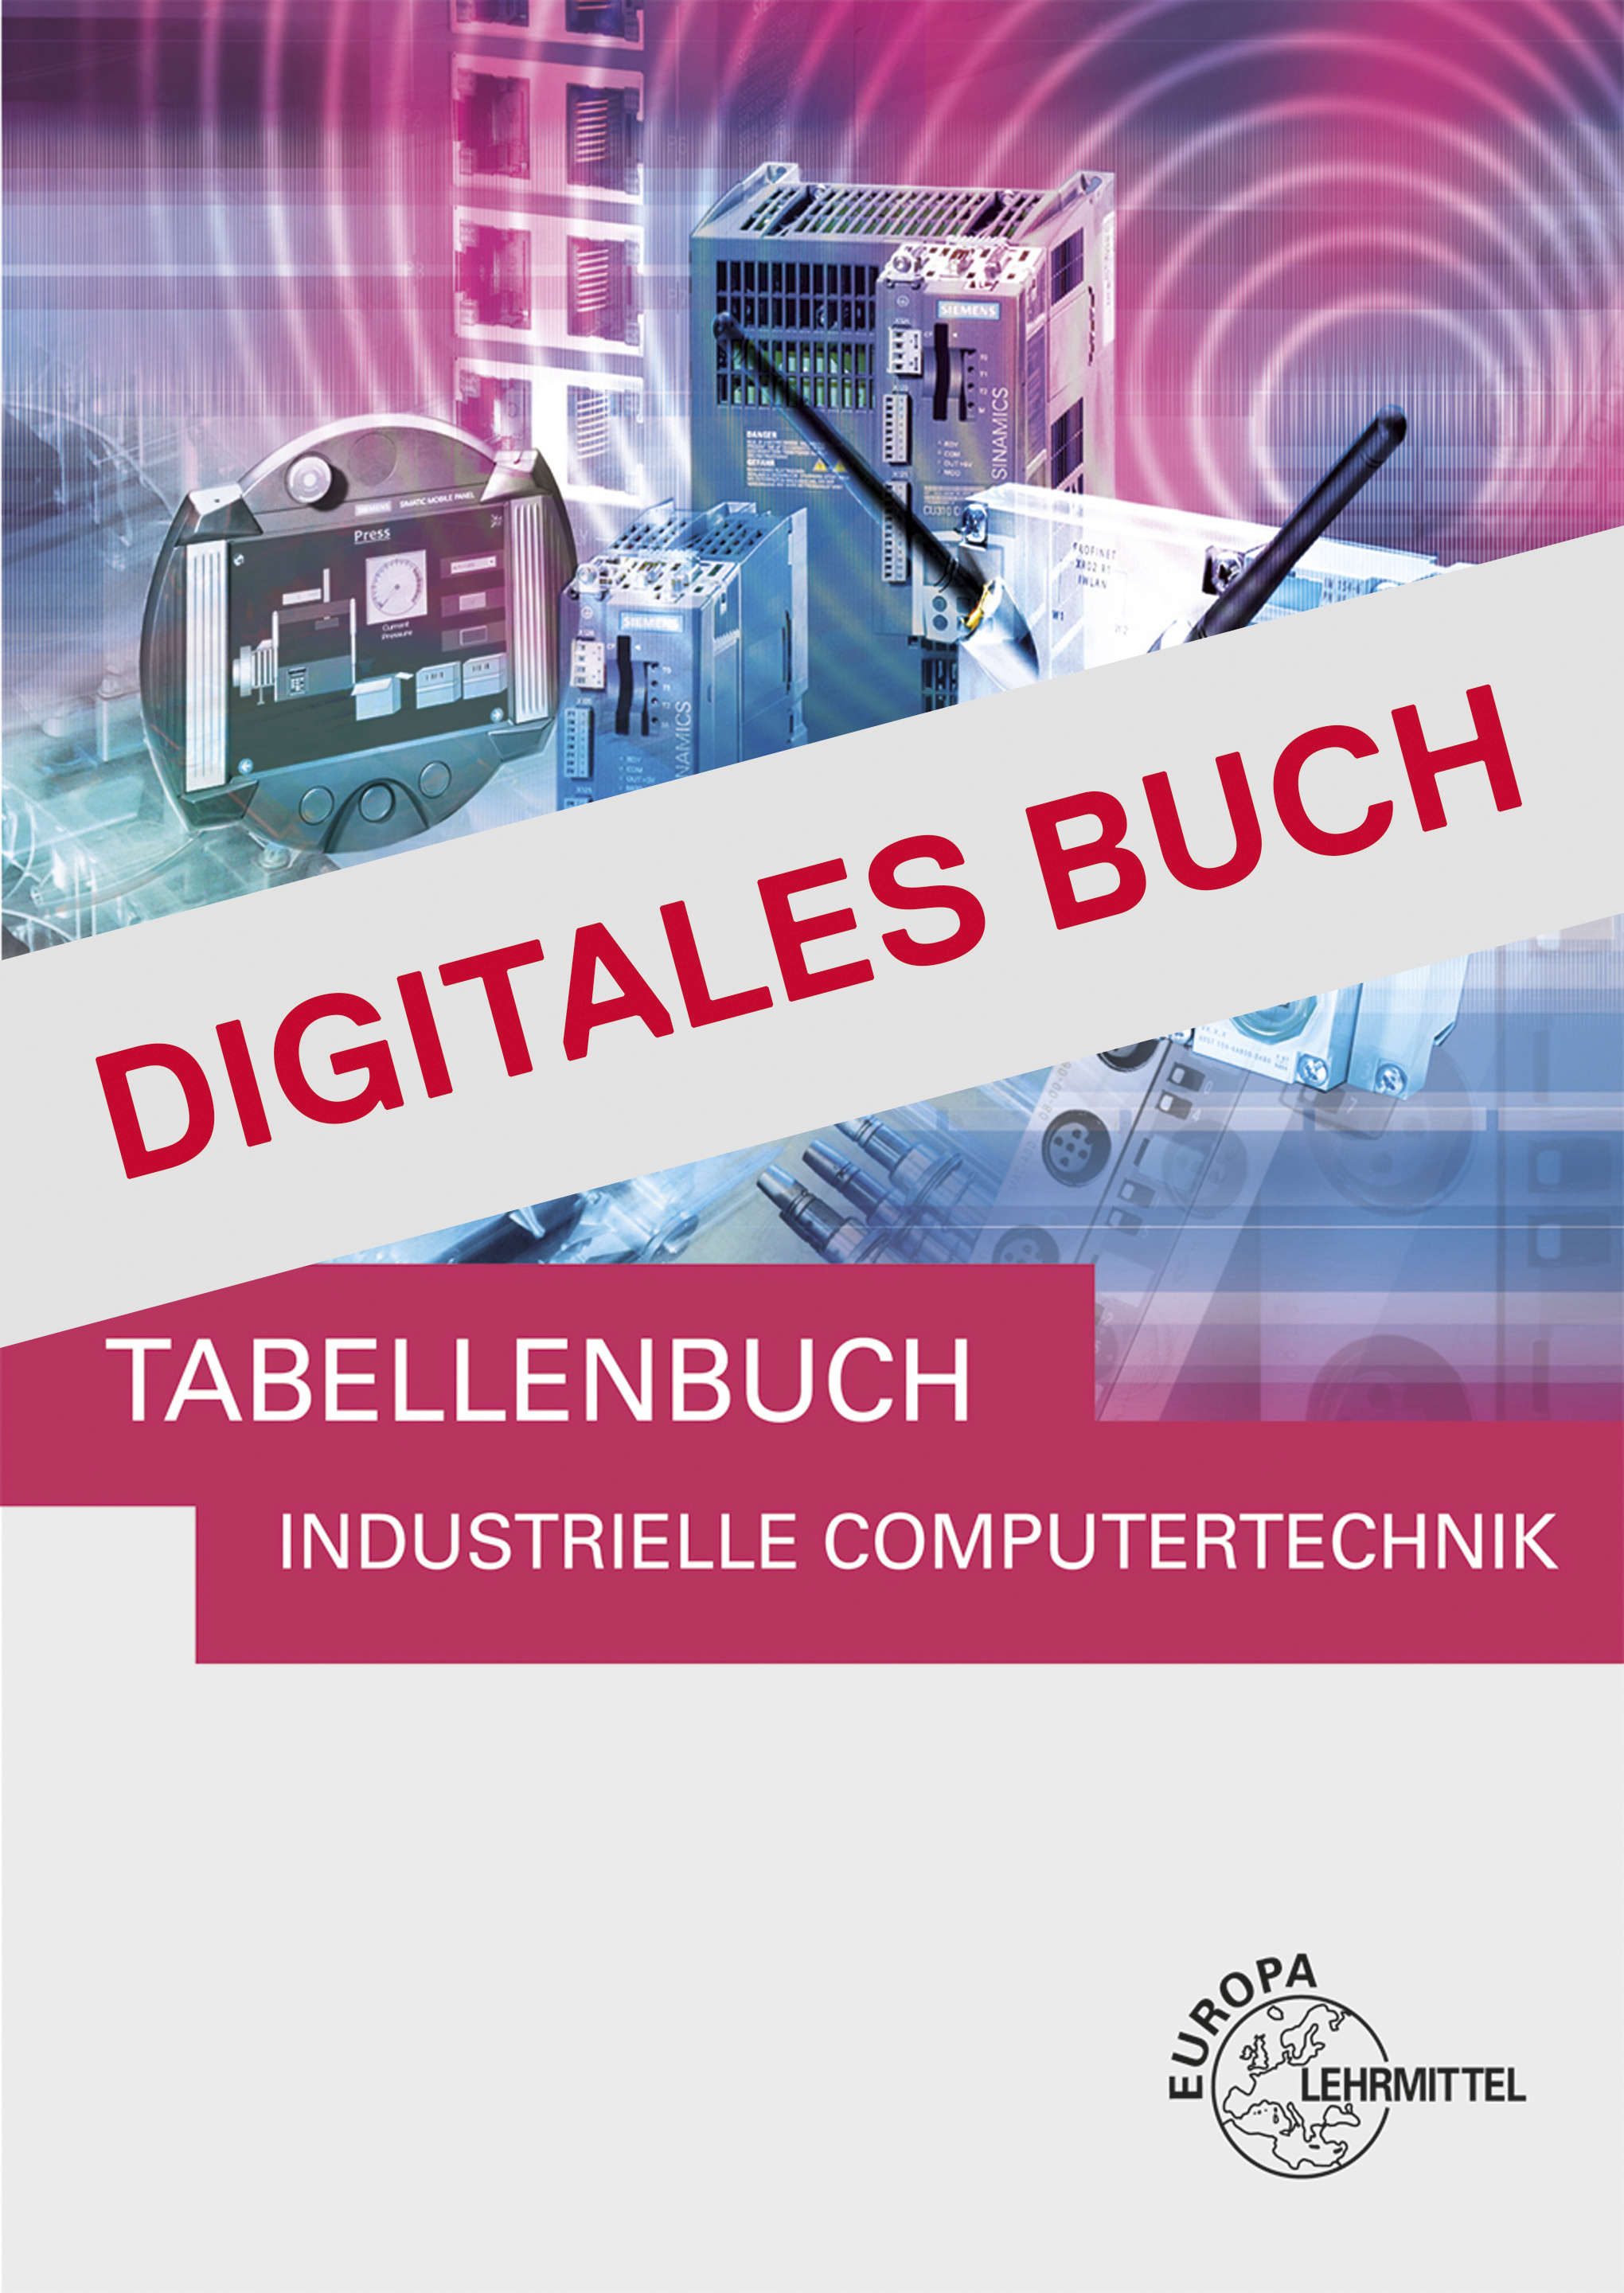 Tabellenbuch Industrielle Computertechnik - Digitales Buch